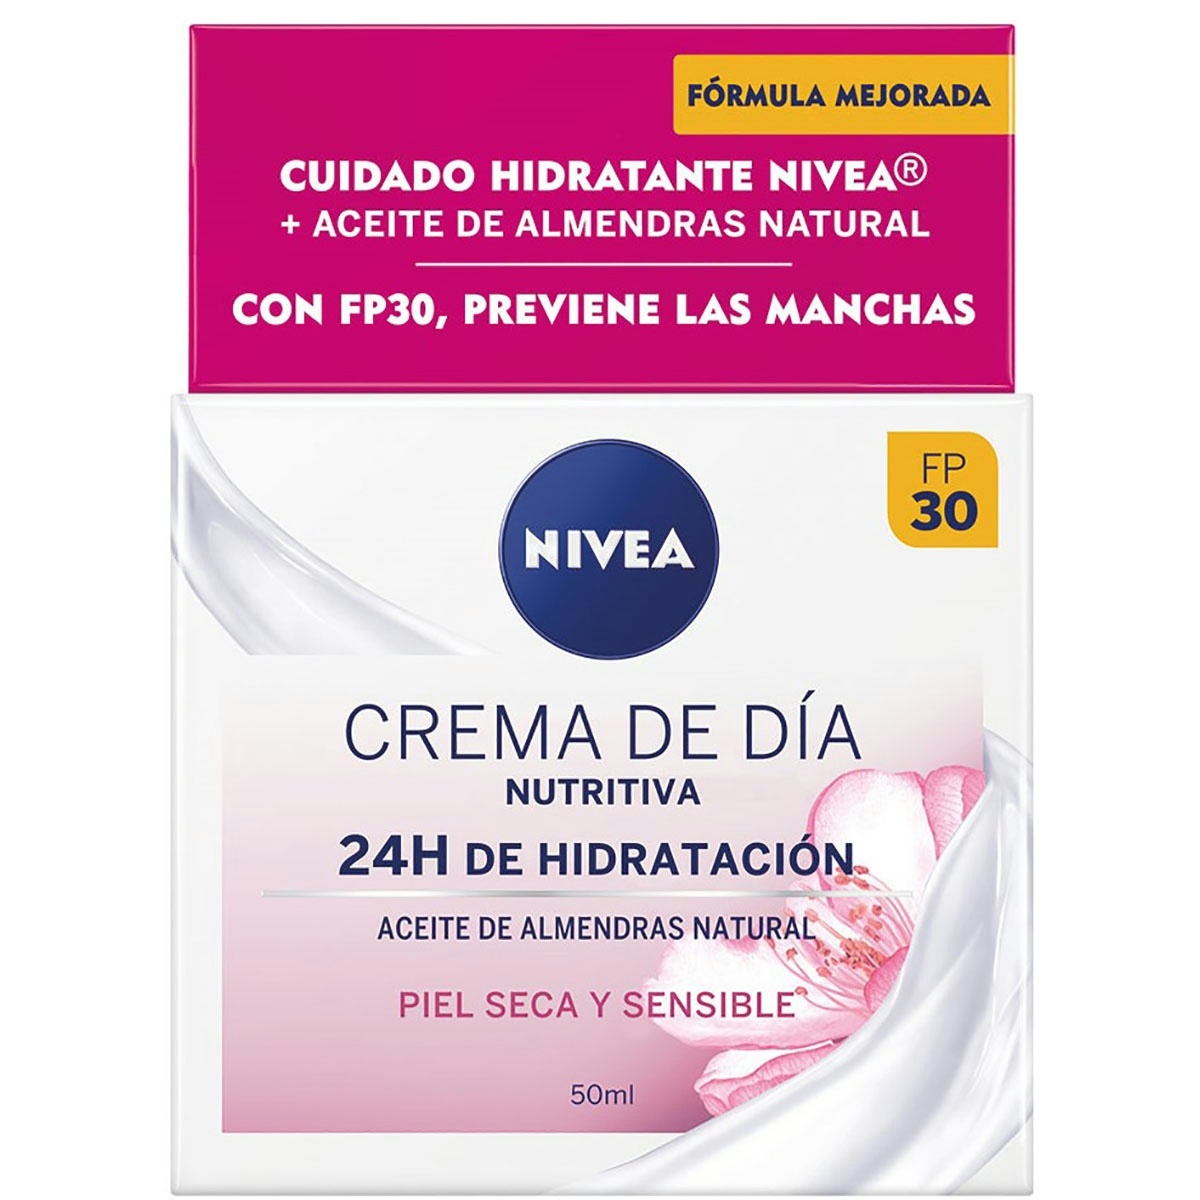 Crema de día NIVEA nutritivo hidratante piel seca tarro 50 ml